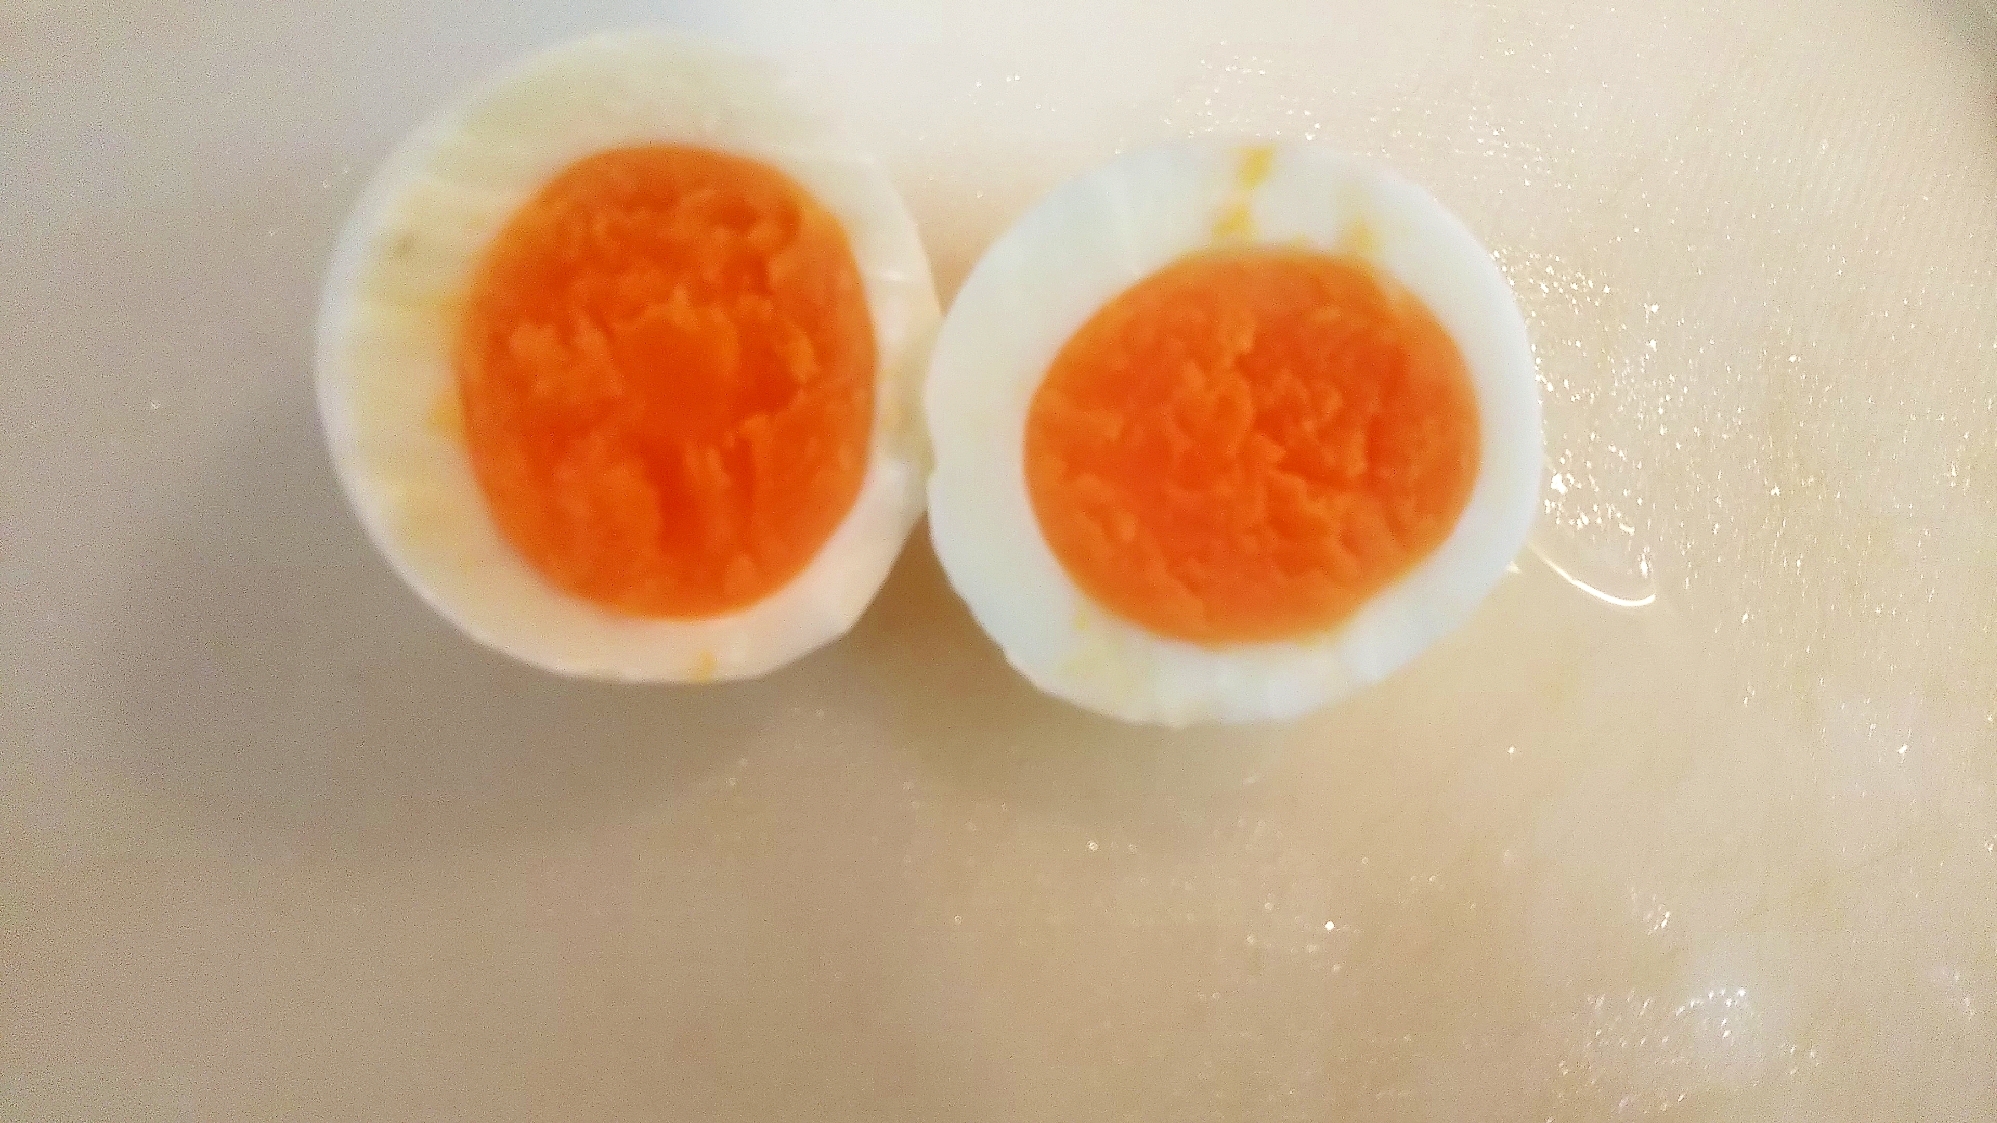 お弁当☆ゆで卵のきれいな切り方